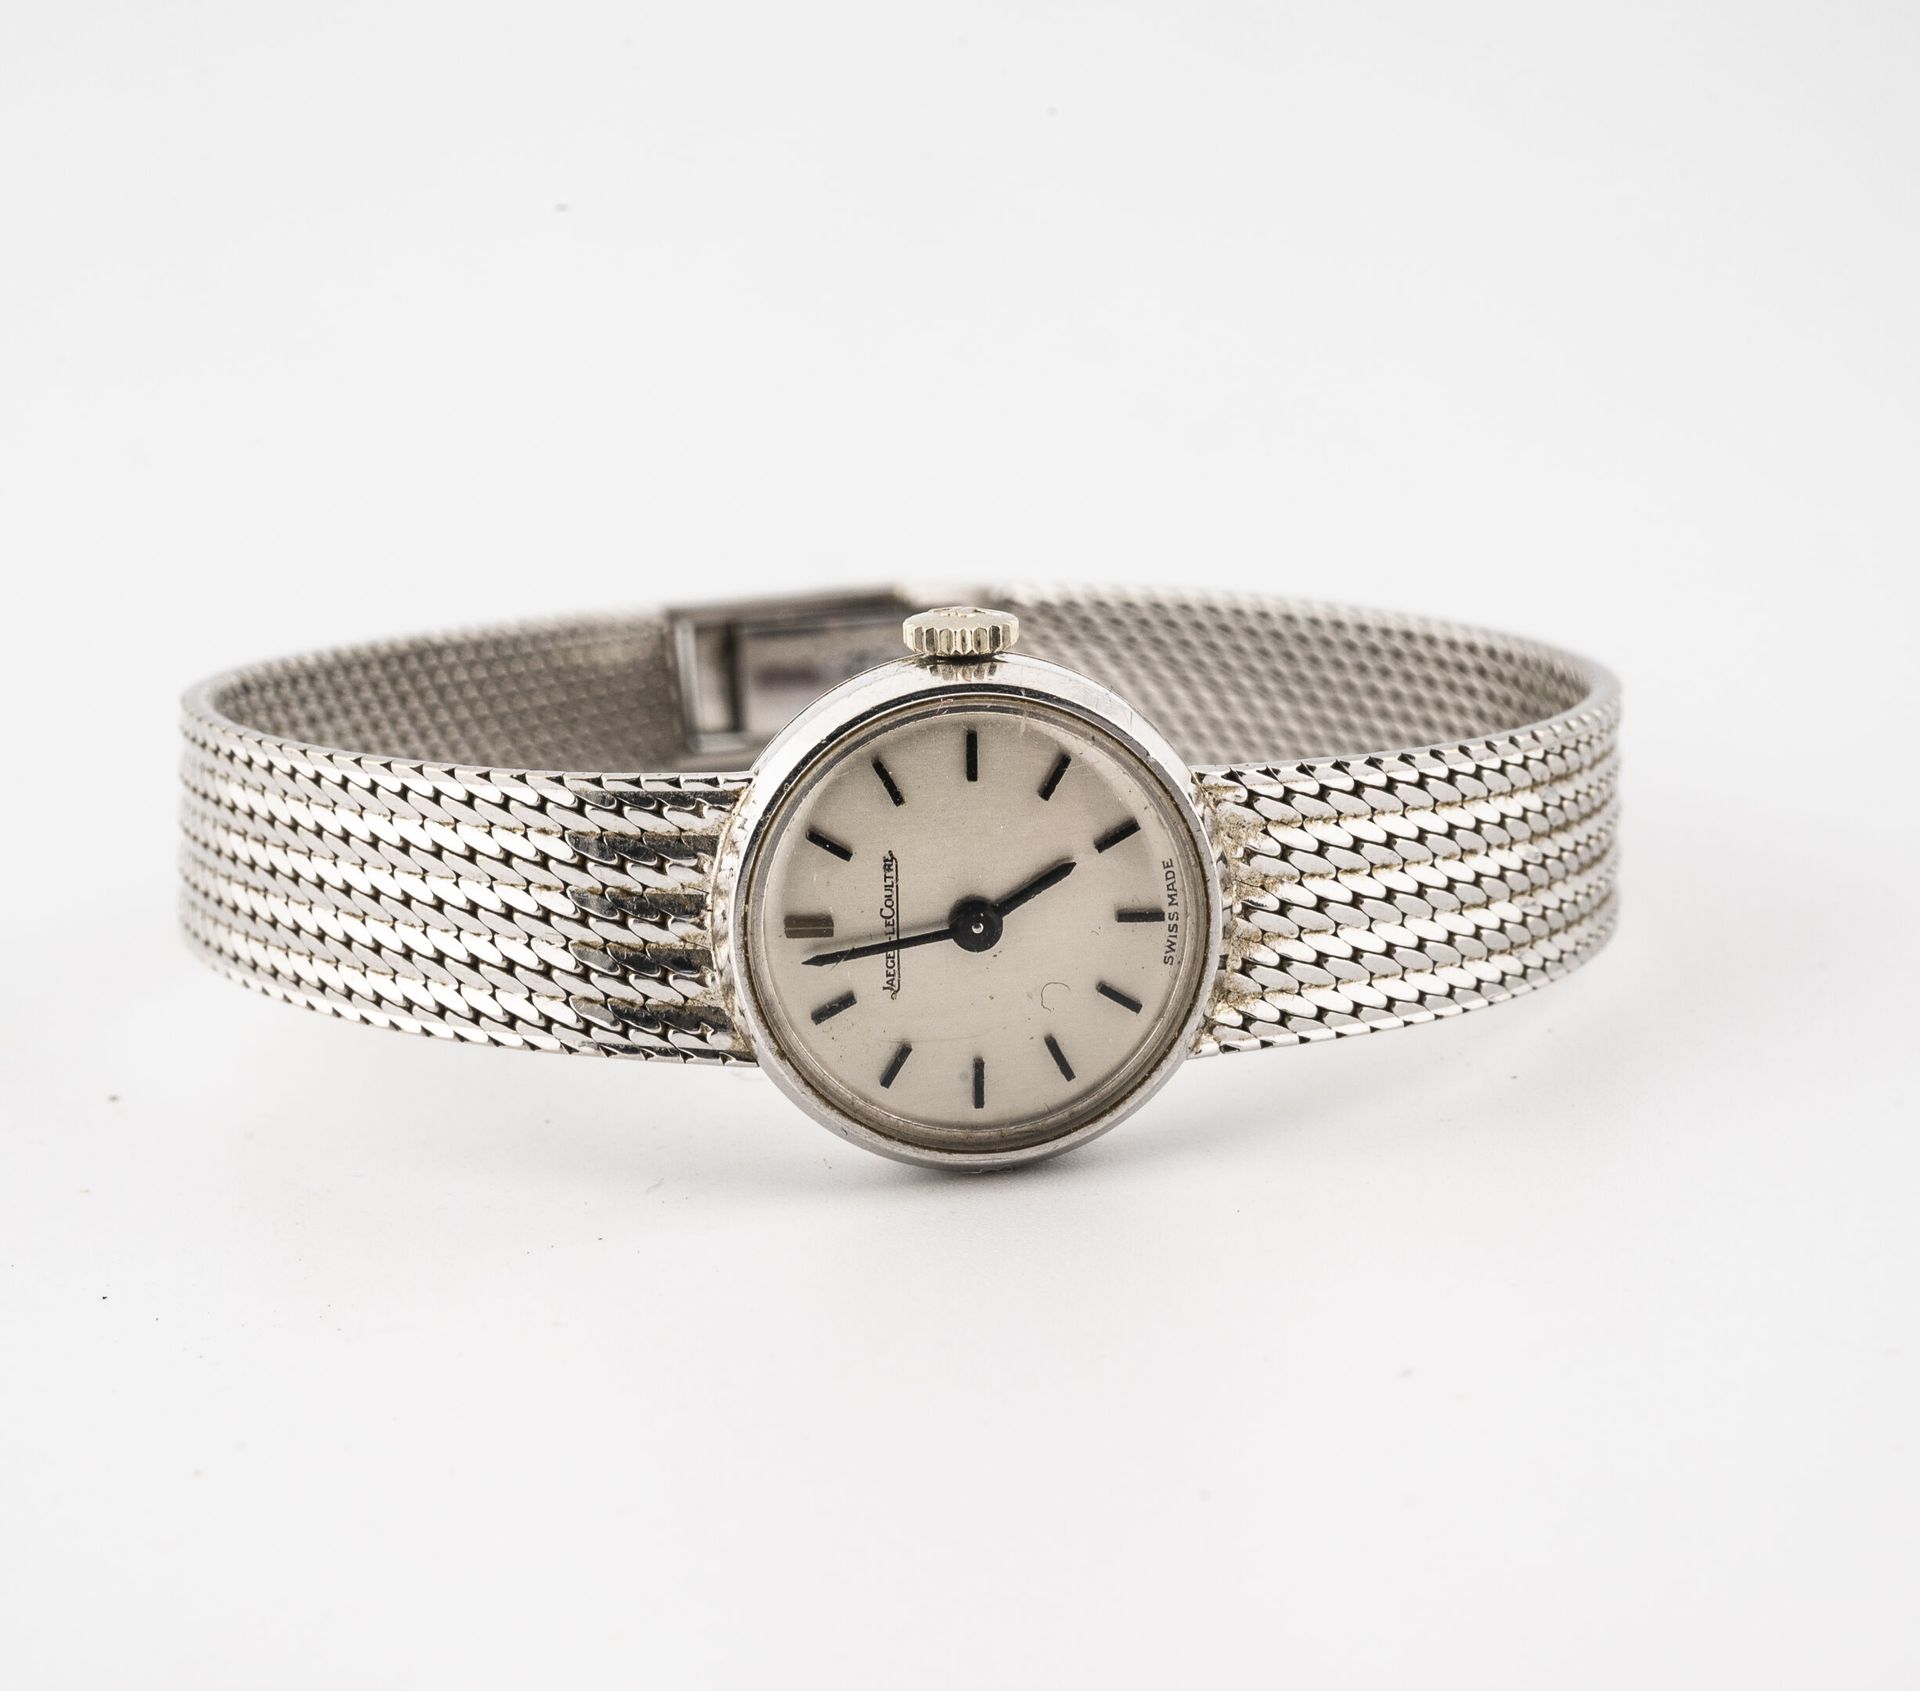 JAEGER-LECOULTRE Reloj de pulsera de señora en oro blanco (750).

Caja redonda. &hellip;